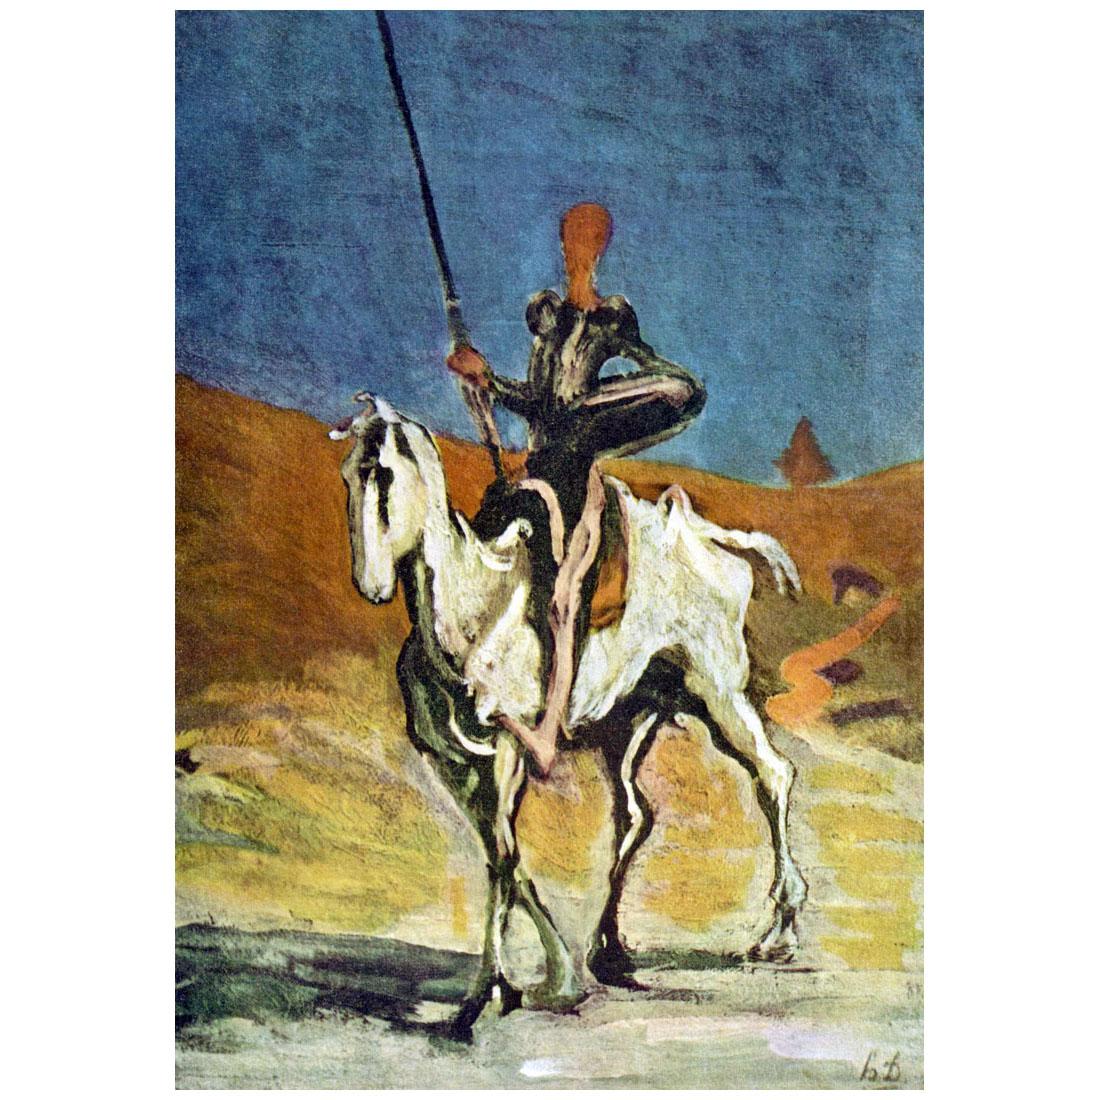 Honore Daumier. Don Quichotte. 1868. Neue Pinakothek, Munchen